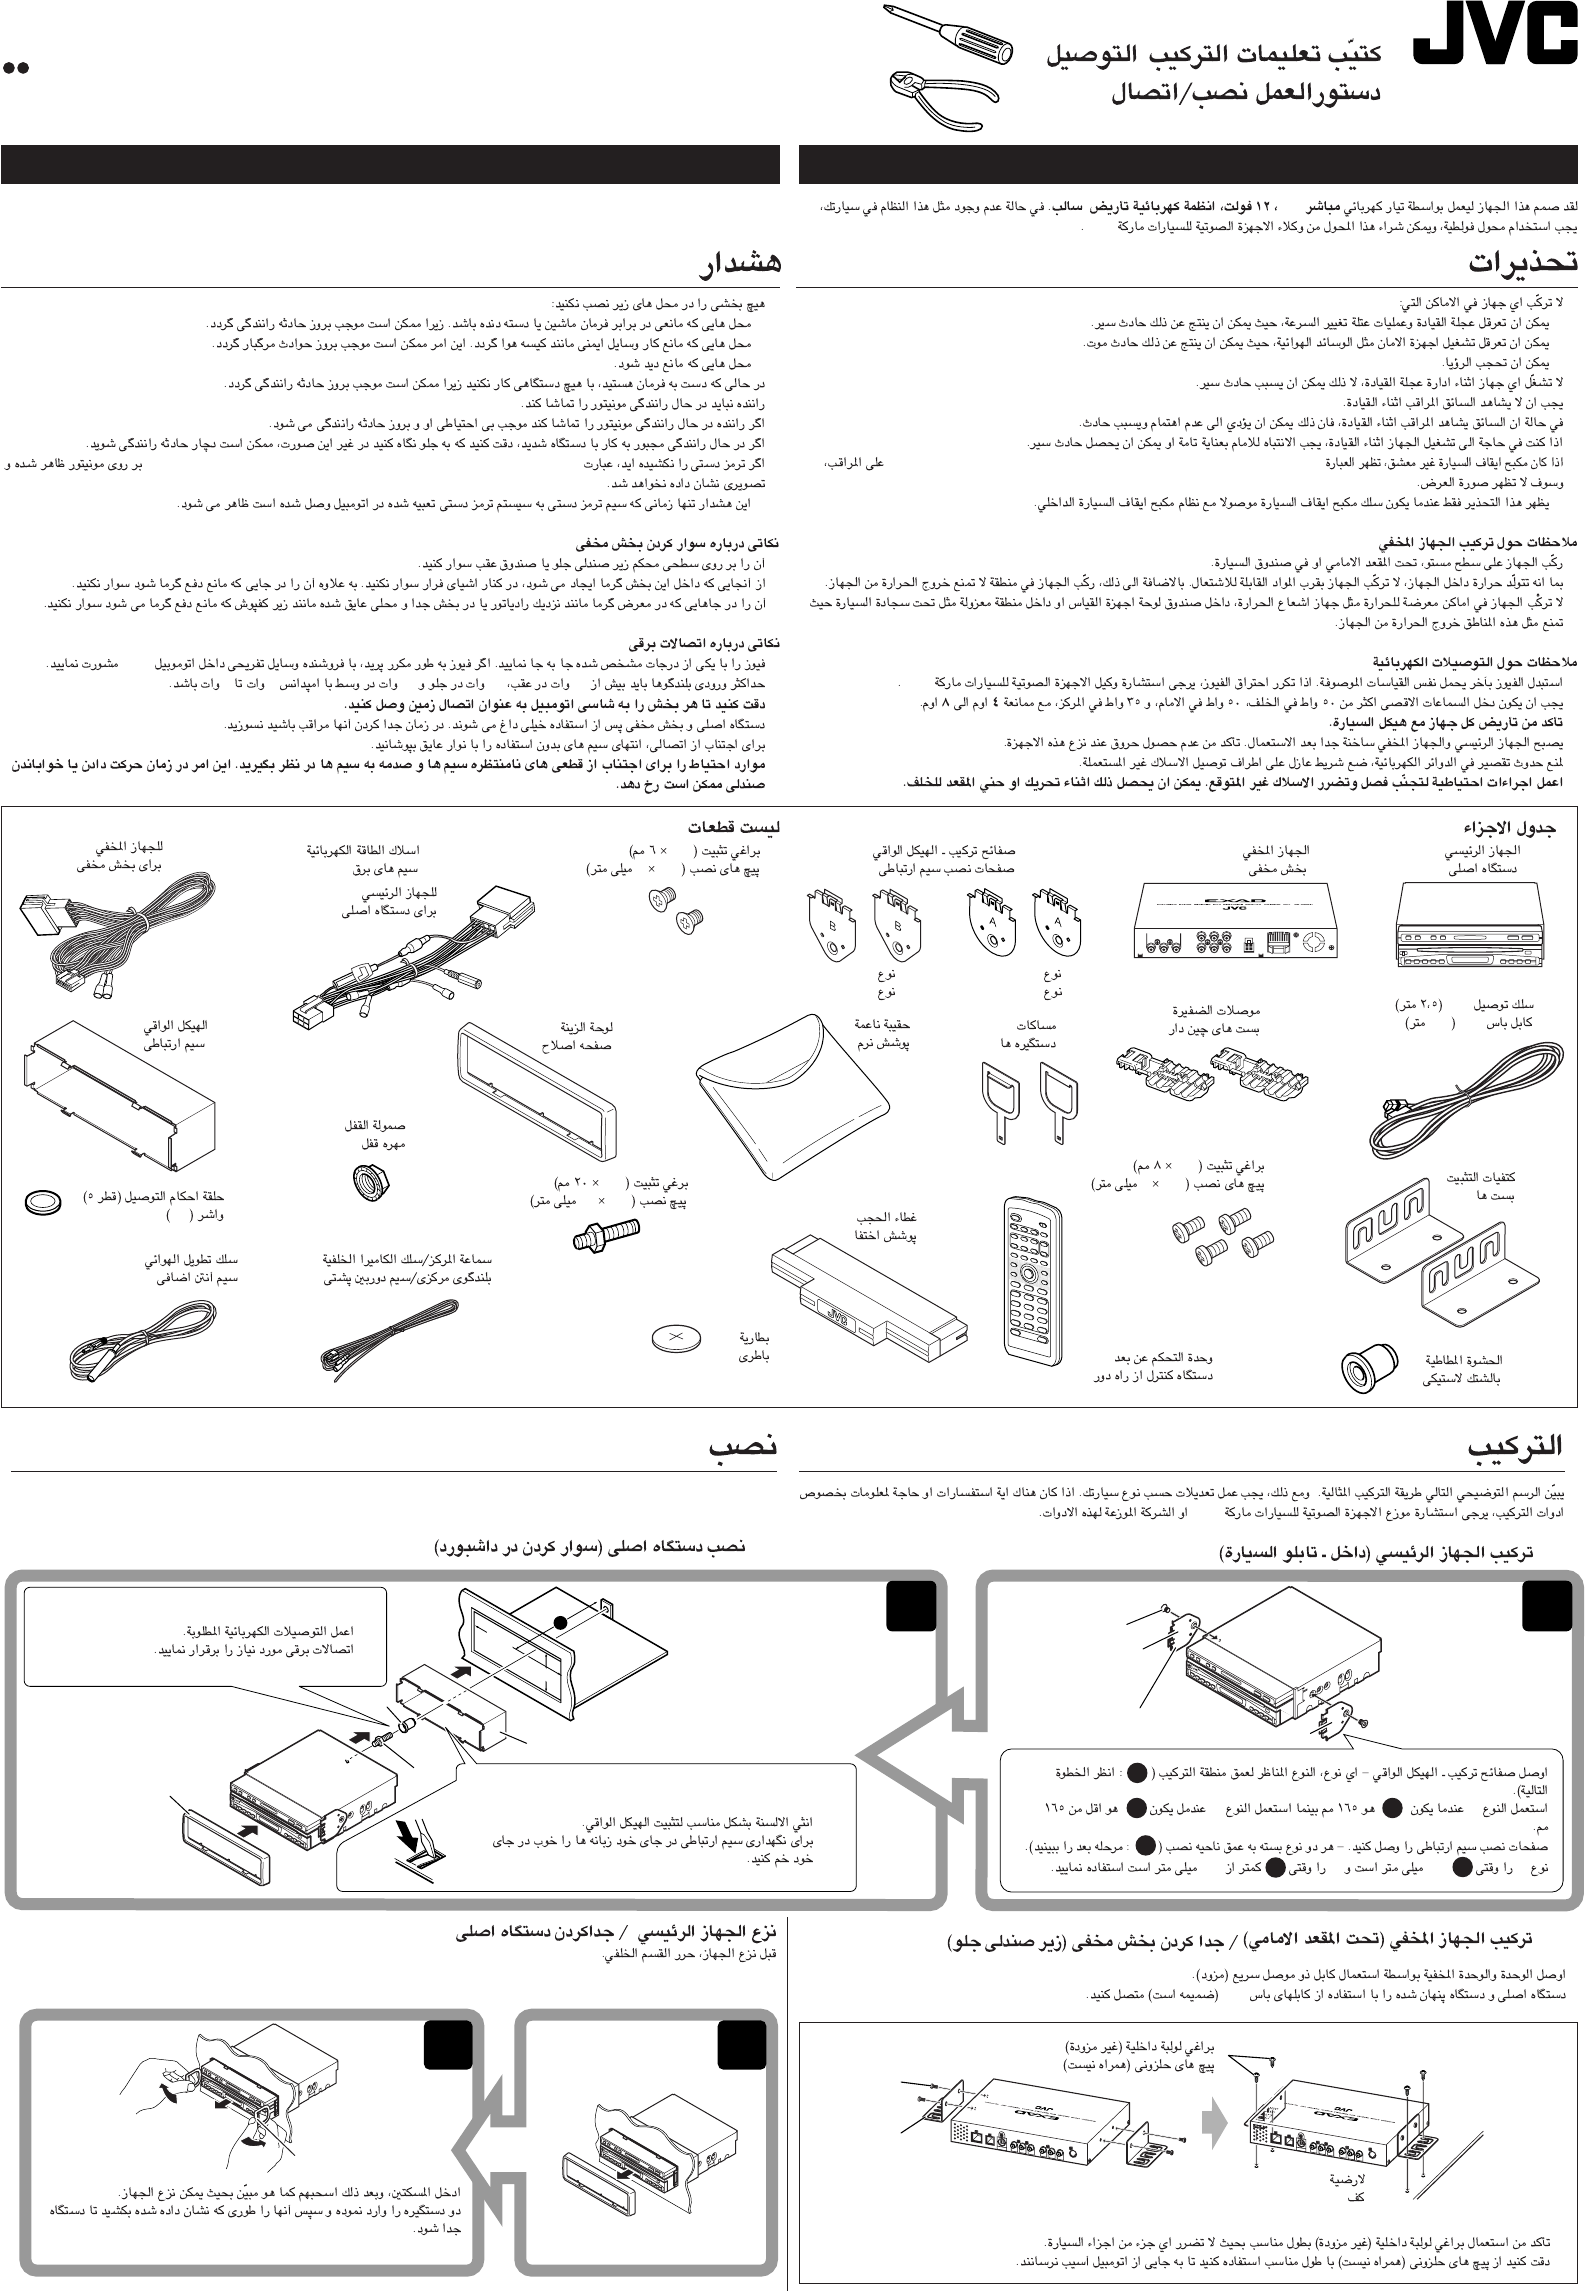 Jvc Kd Av7001eu Install1 2 Kd Av7001 6 P65 Arab User Manual Installation Lvt1172 008a